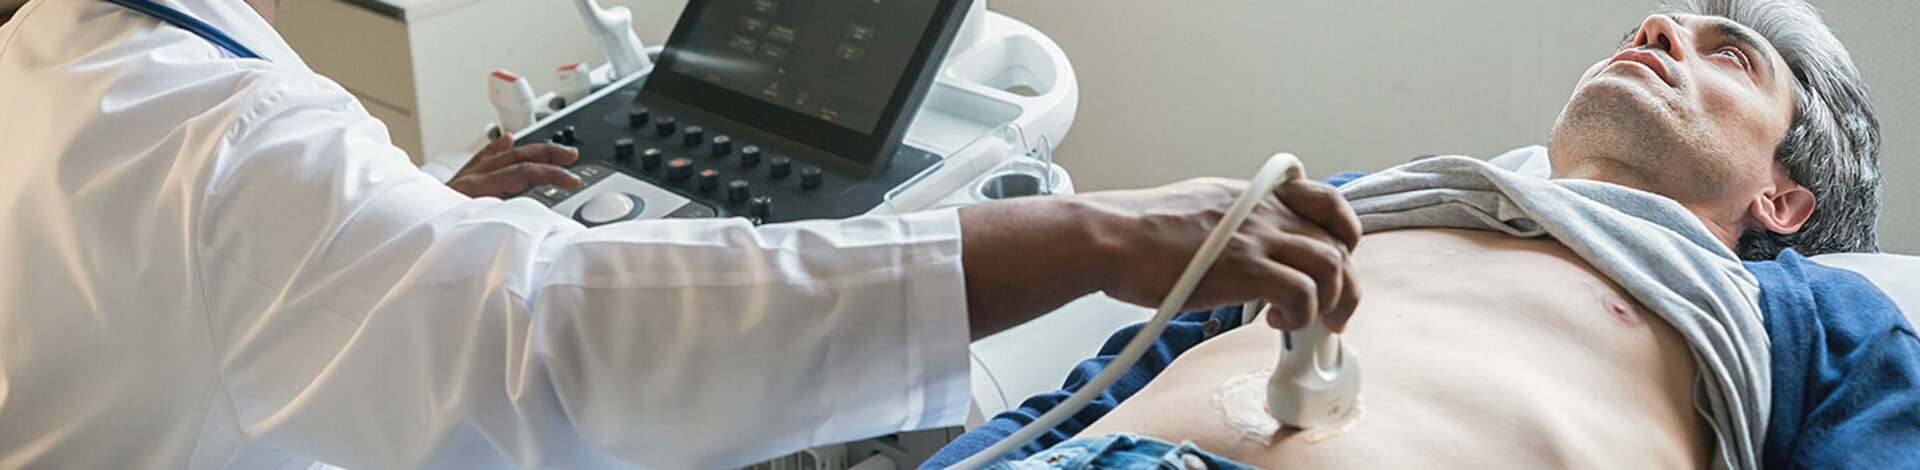 Ein Gastroenterologe untersucht den Bauchraum eines Mannes mit einem Ultraschallgerät.